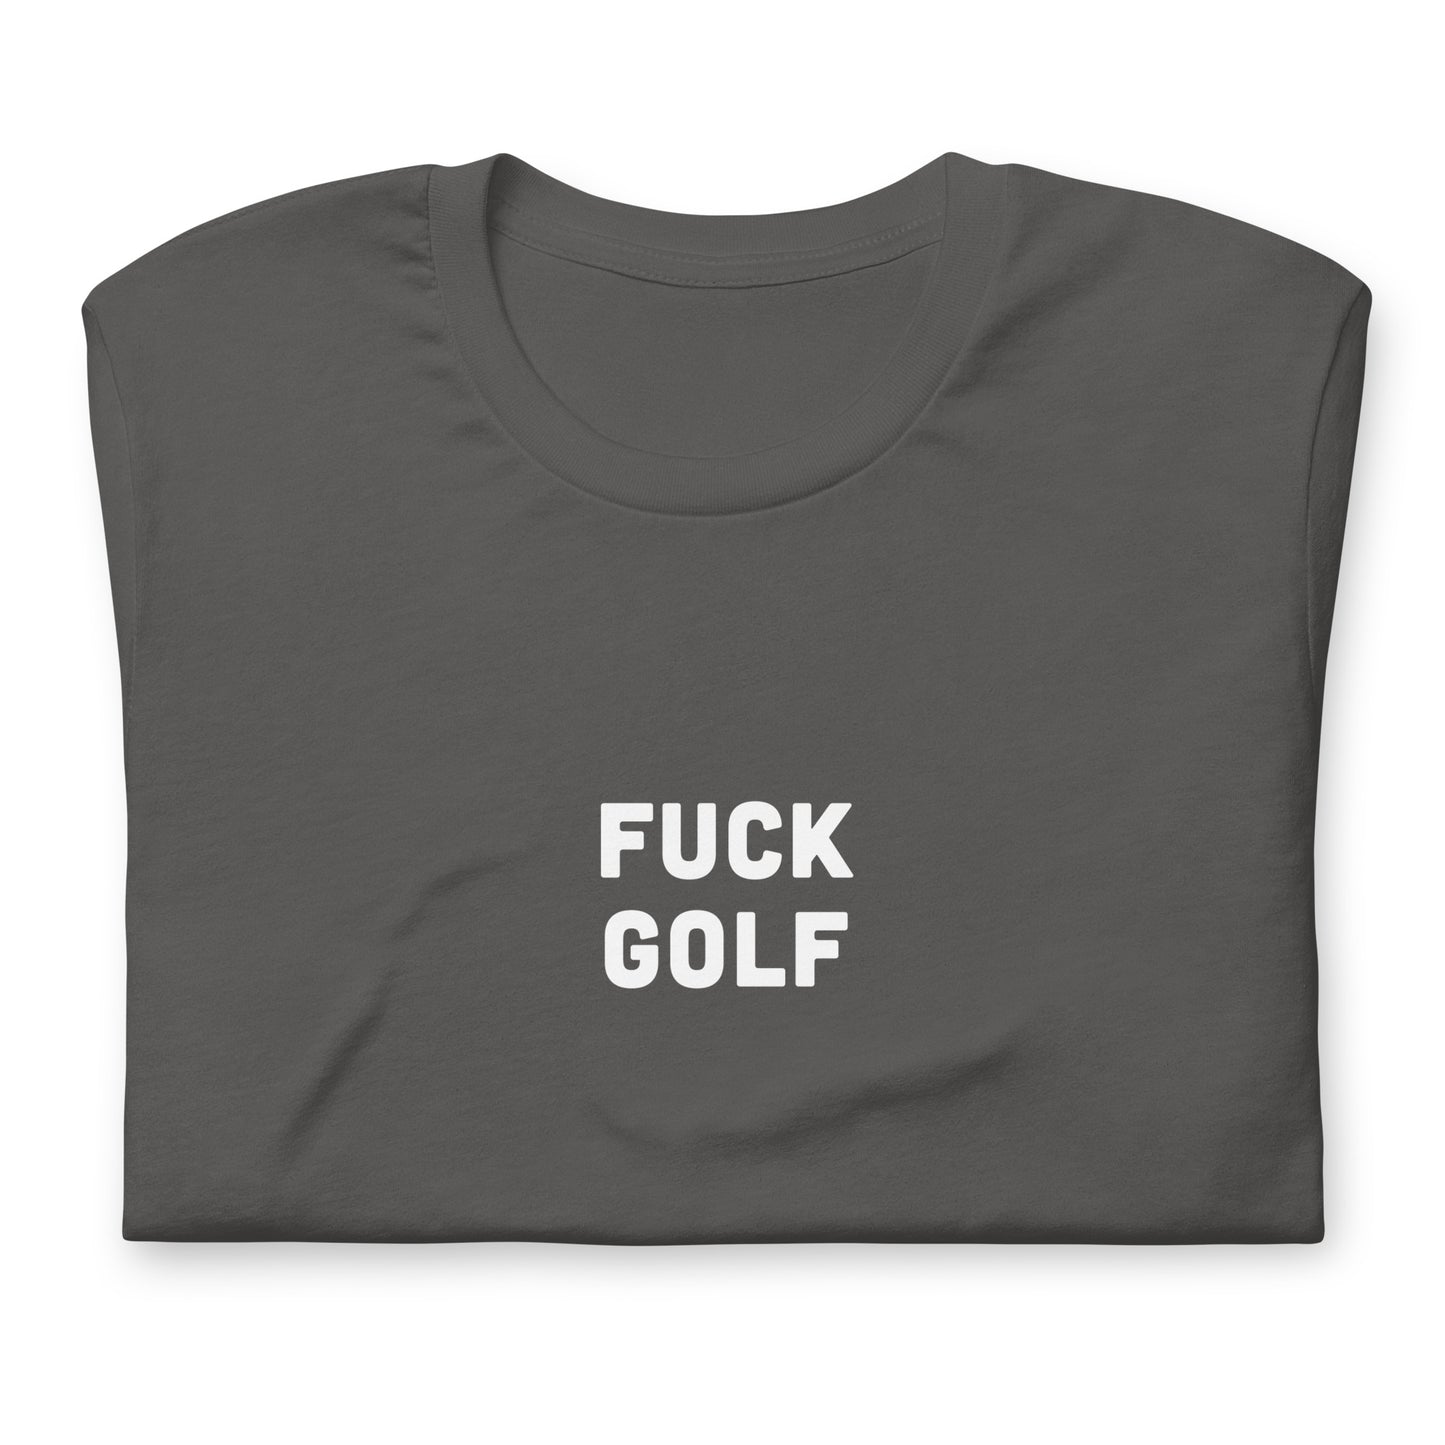 Fuck Golf T-Shirt Size 2XL Color Black